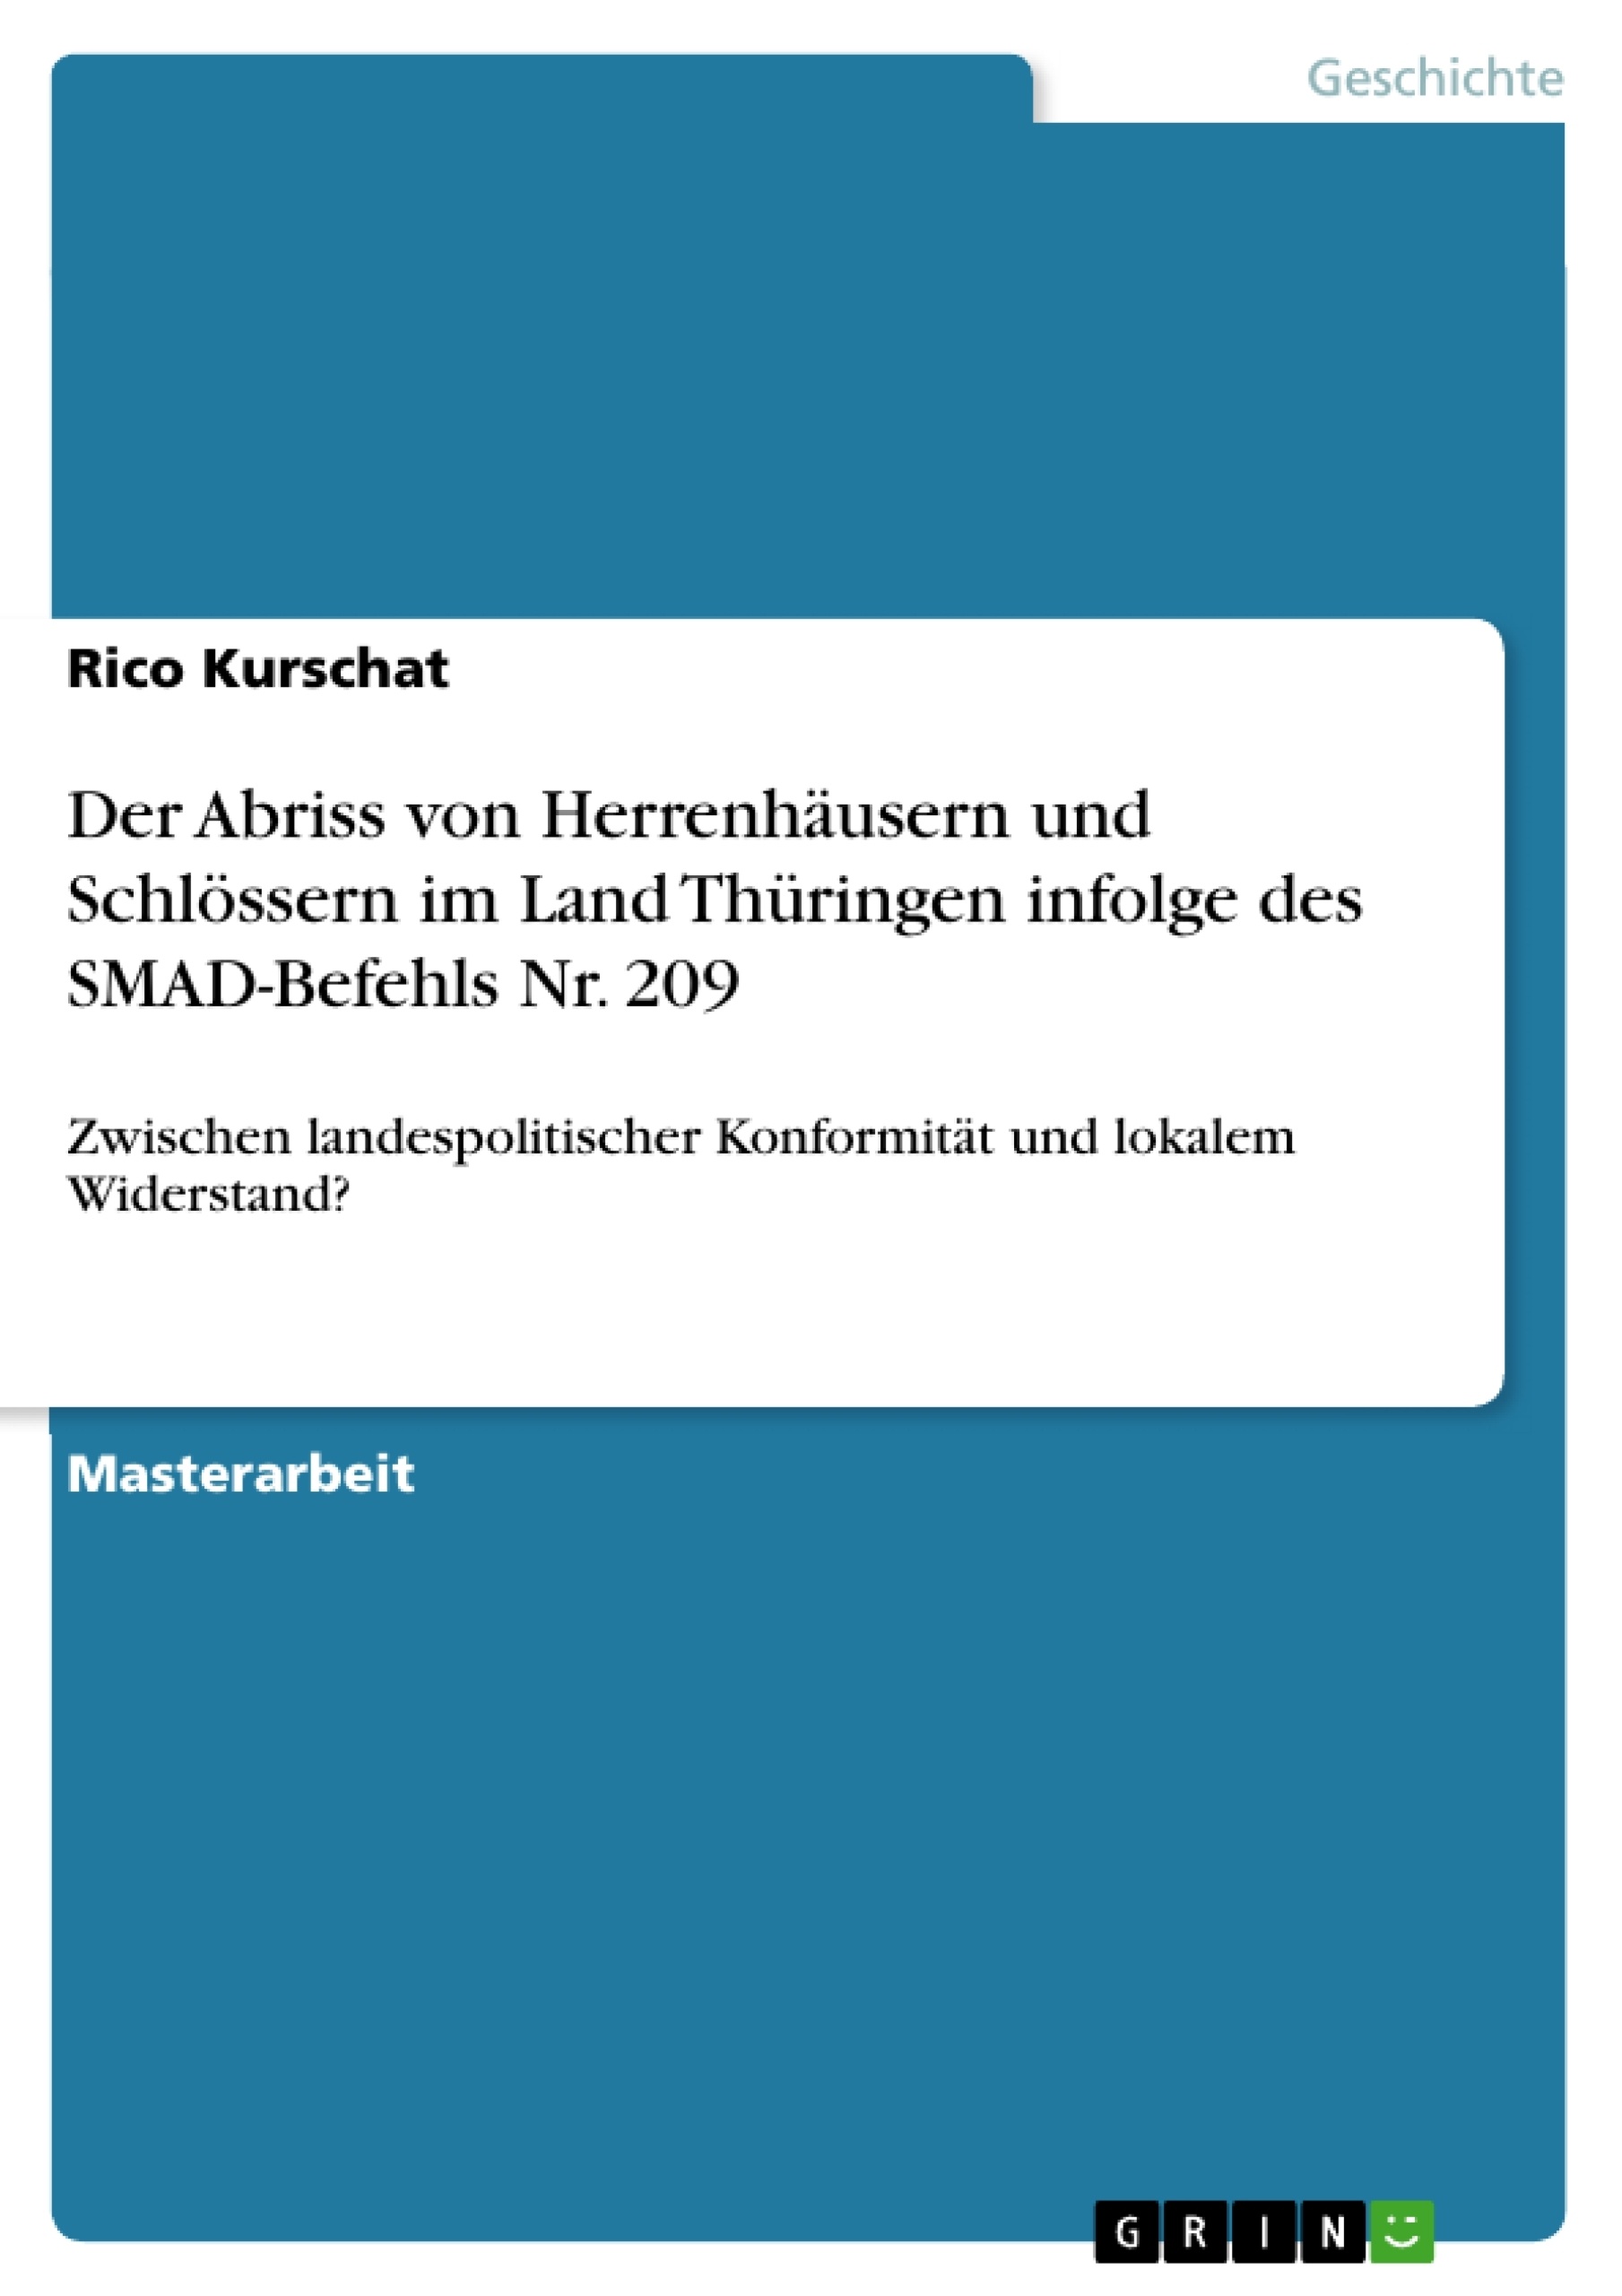 Titre: Der Abriss von Herrenhäusern und Schlössern im Land Thüringen infolge des SMAD-Befehls Nr. 209